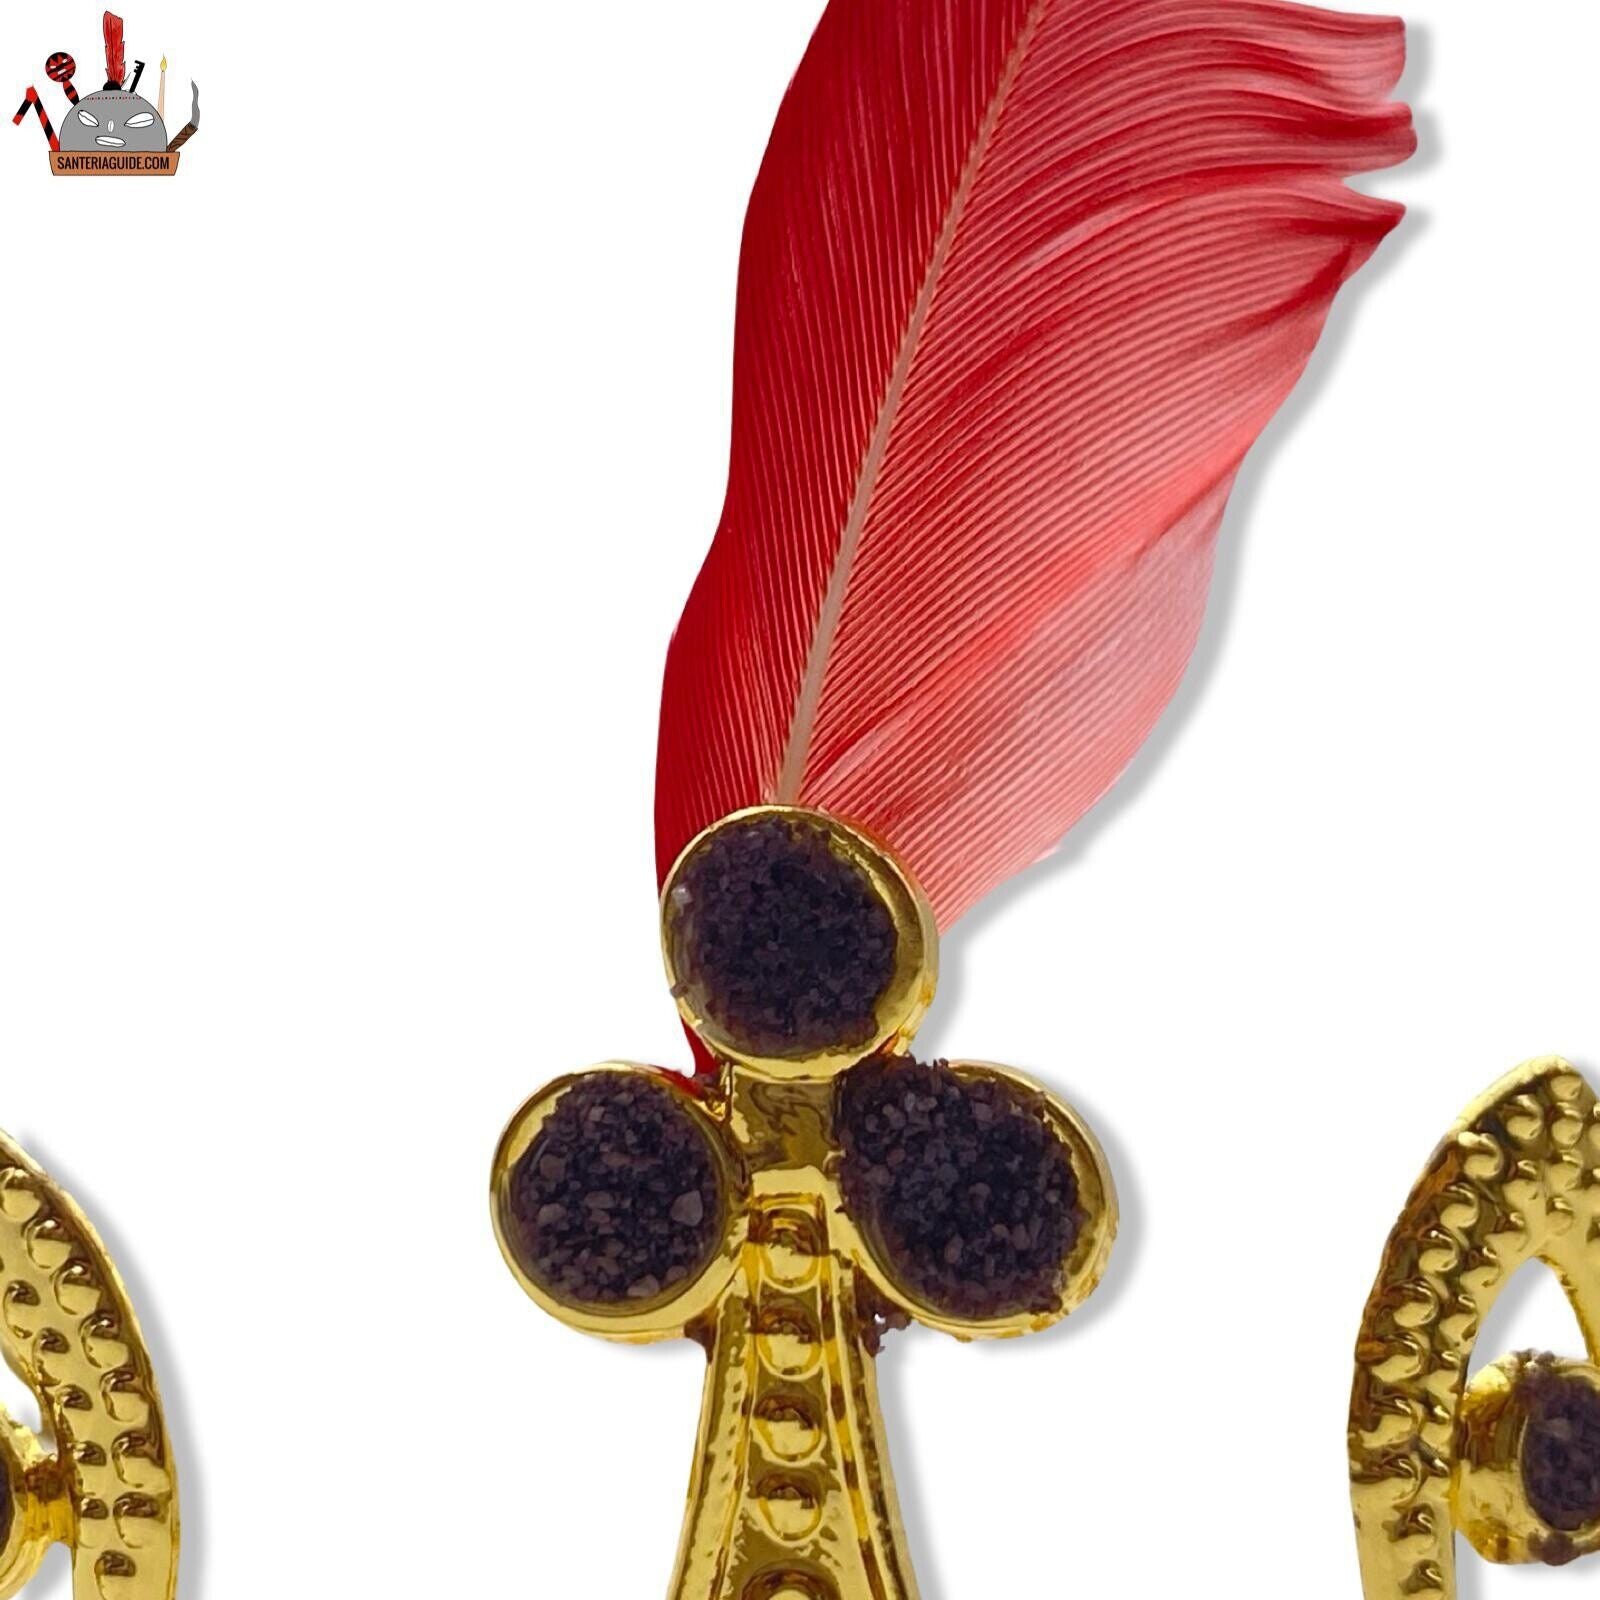 Corona para Eleguá - Elegant Crown for Santería Rituals